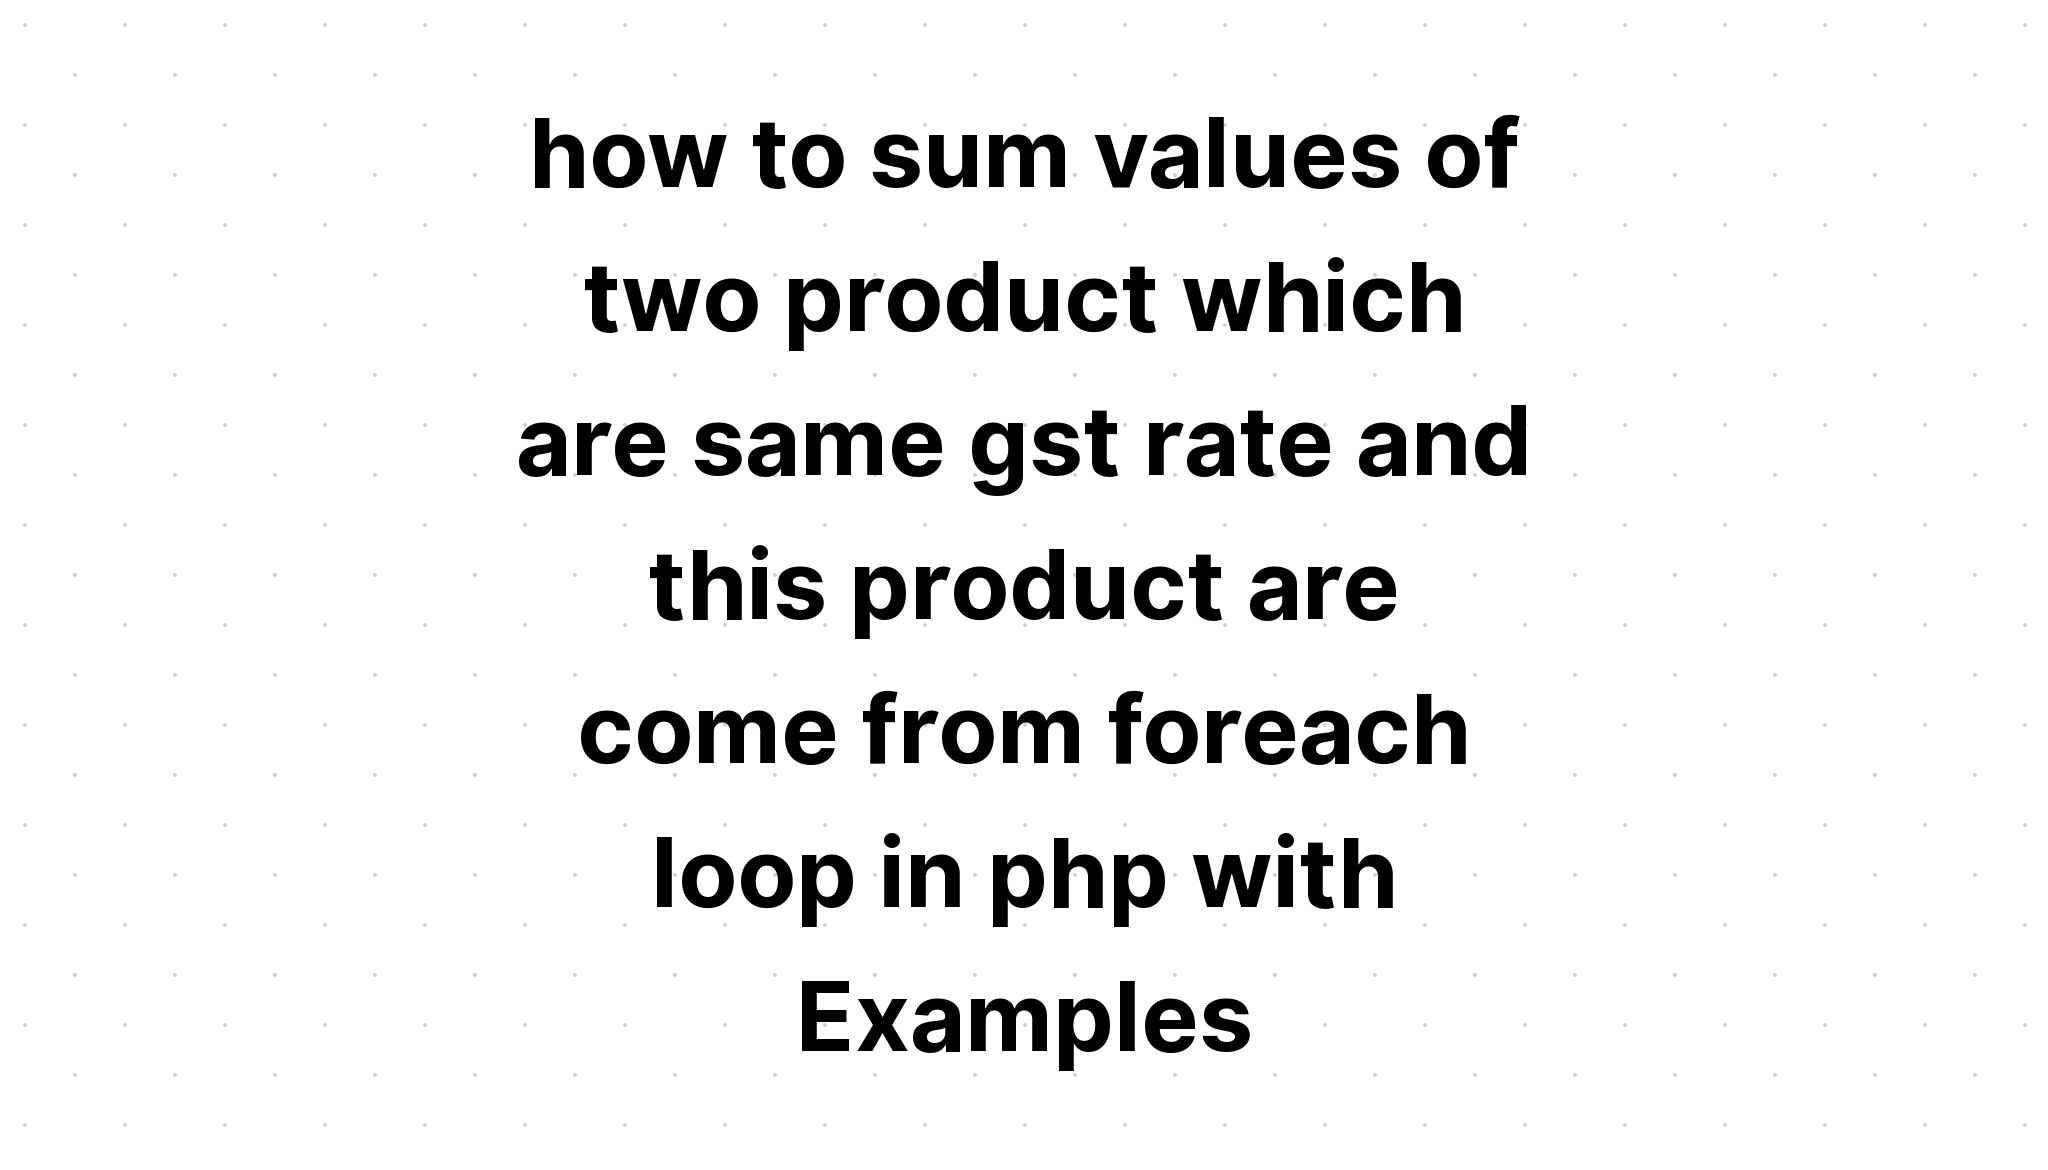 cách tính tổng giá trị của hai sản phẩm có cùng tỷ lệ gst và sản phẩm này đến từ vòng lặp foreach trong php với các ví dụ